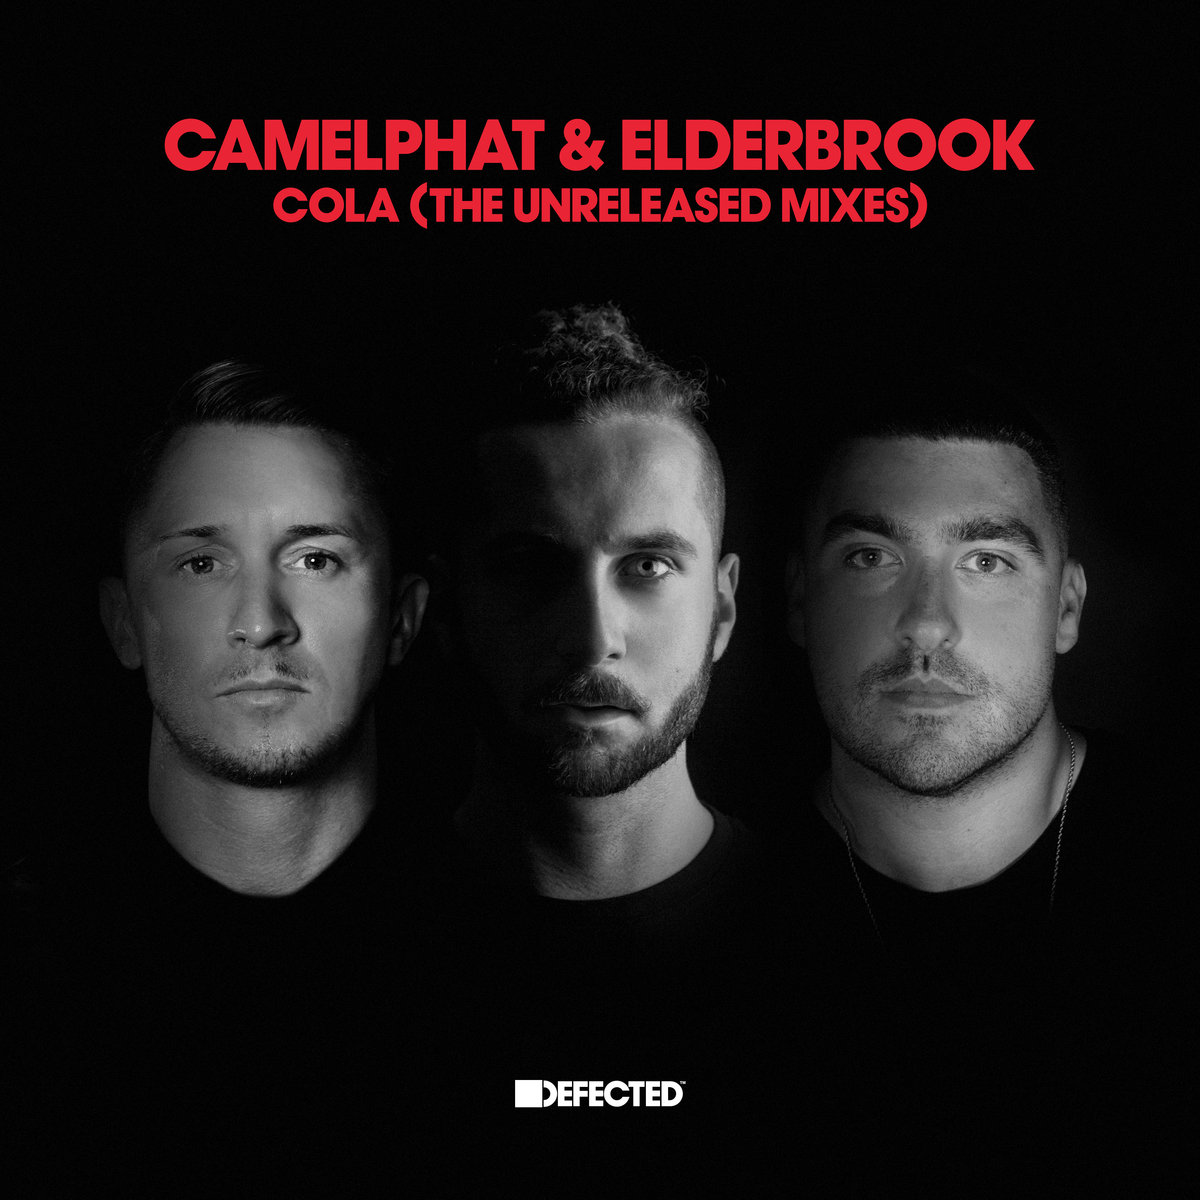 CamelPhat & Elderbrook - Cola (The Unreleased Mixes) / Defected